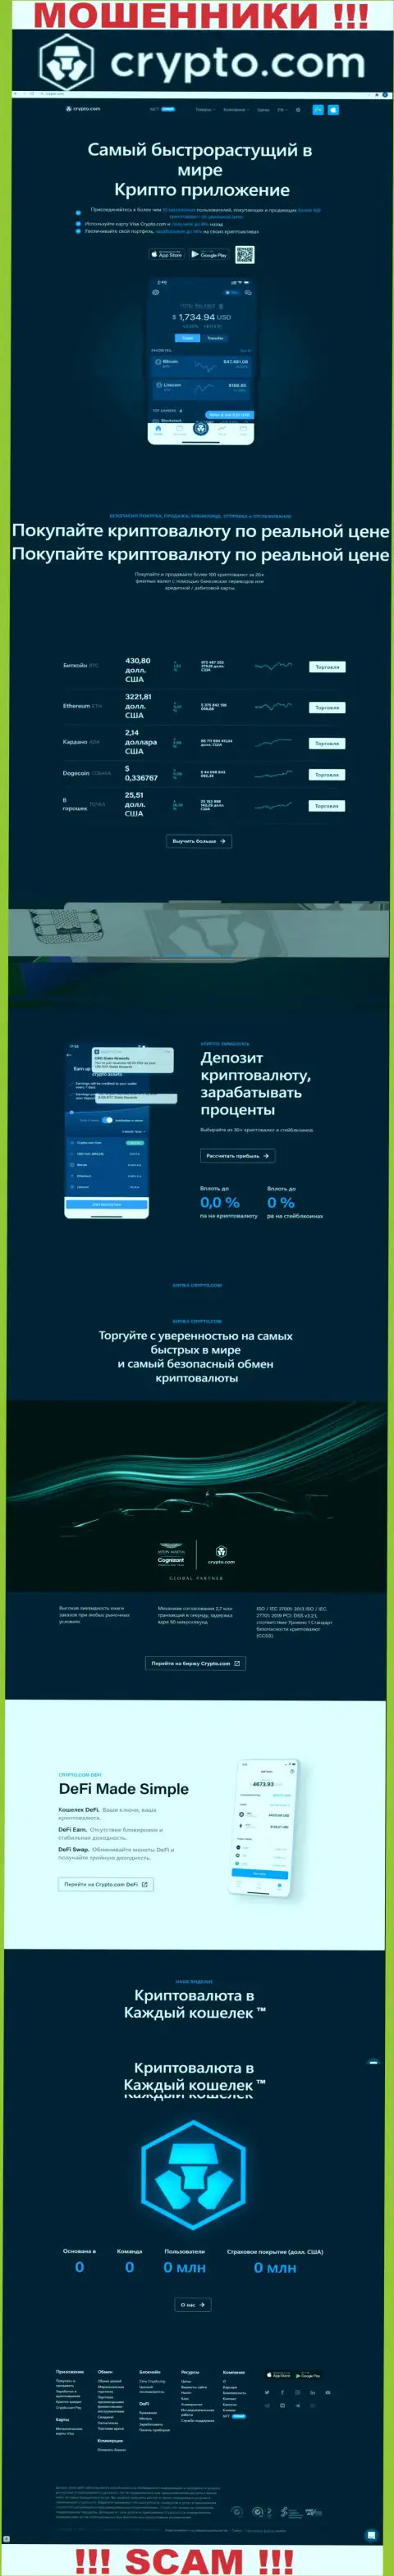 Официальный web-сайт жуликов Крипто Ком, забитый информацией для доверчивых людей